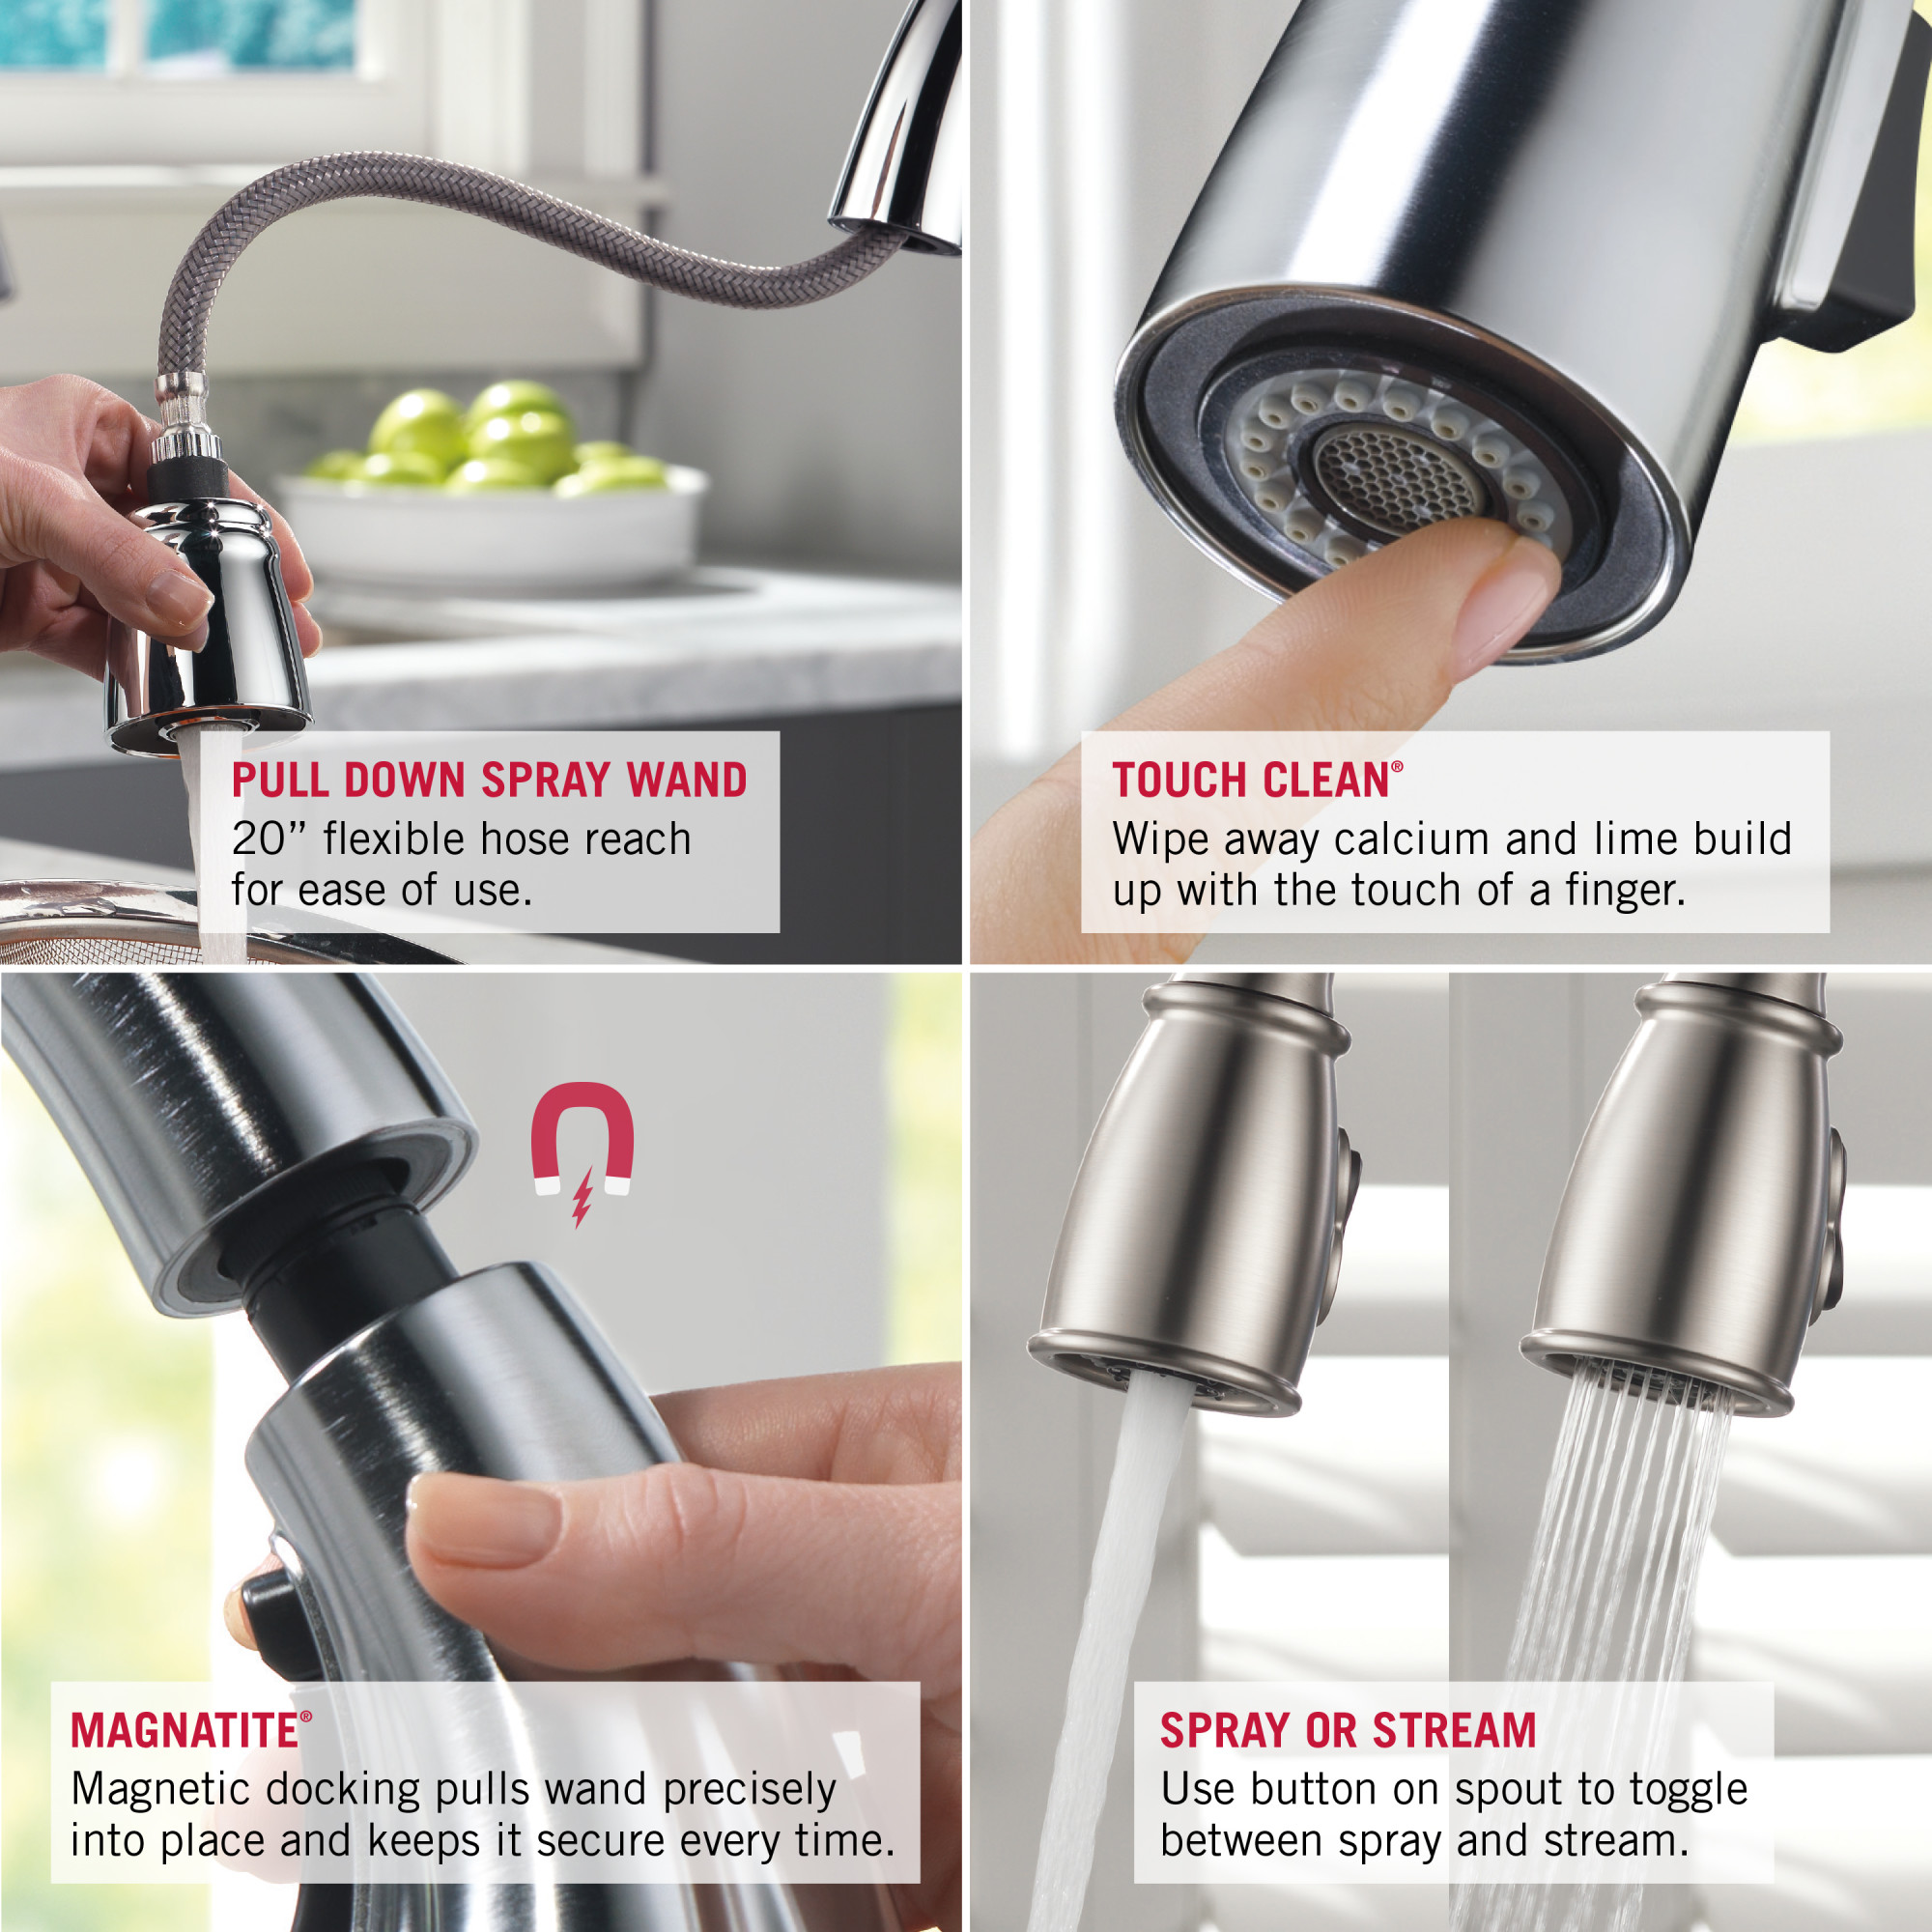 Delta 4353-dst linden single handle pullout kitchen faucet